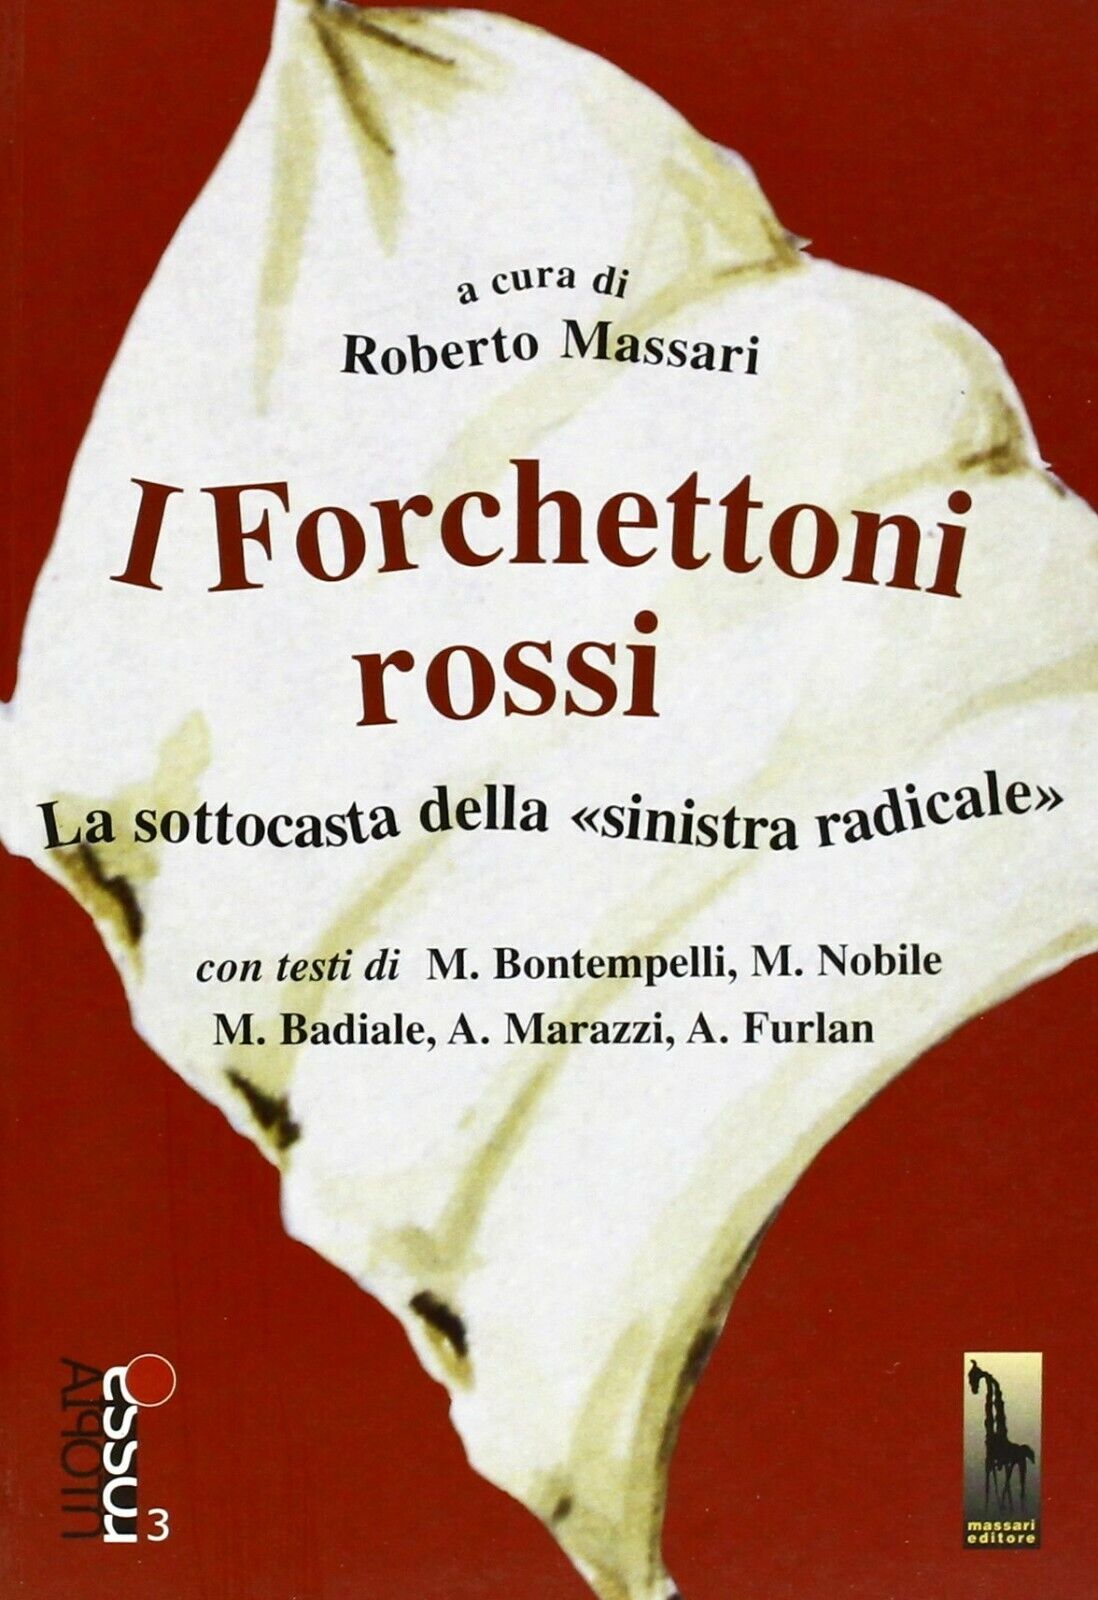 I forchettoni rossi la sottocasta della sinistra radicale di Roberto Massari,  2